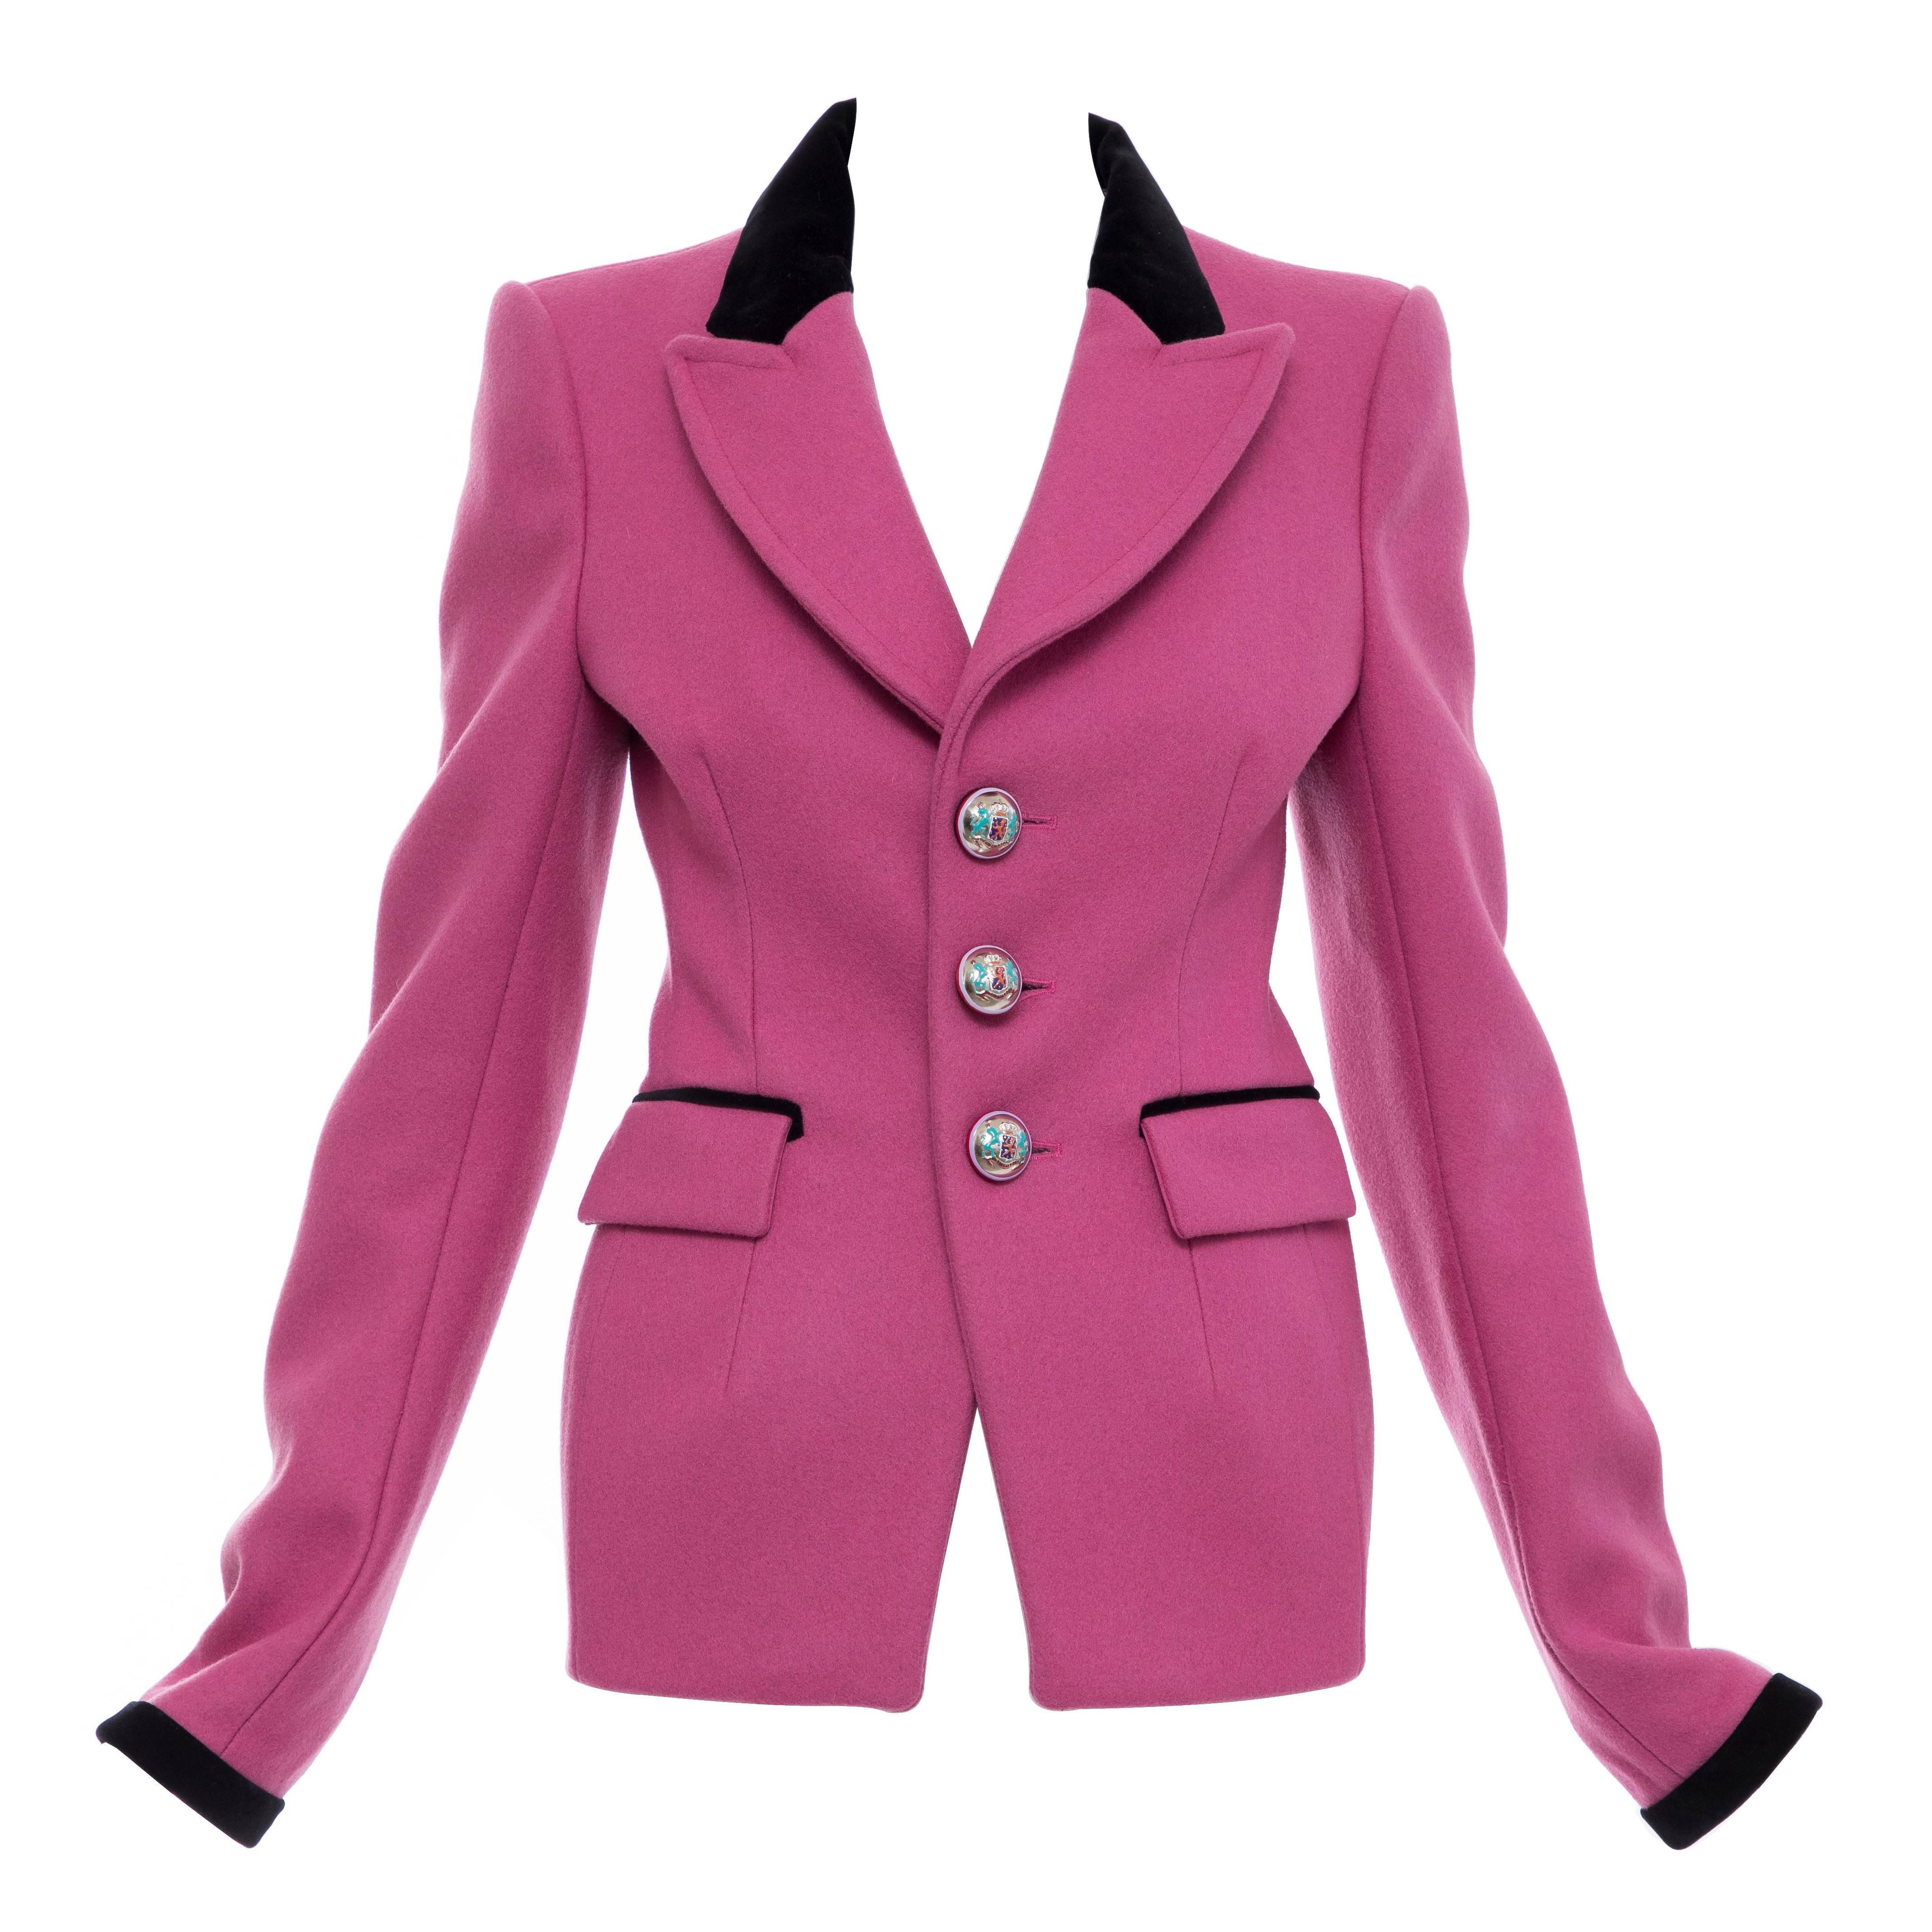  Nicolas Ghesquière for Balenciaga Runway Pink Wool Velvet Blazer, Fall 2007 For Sale